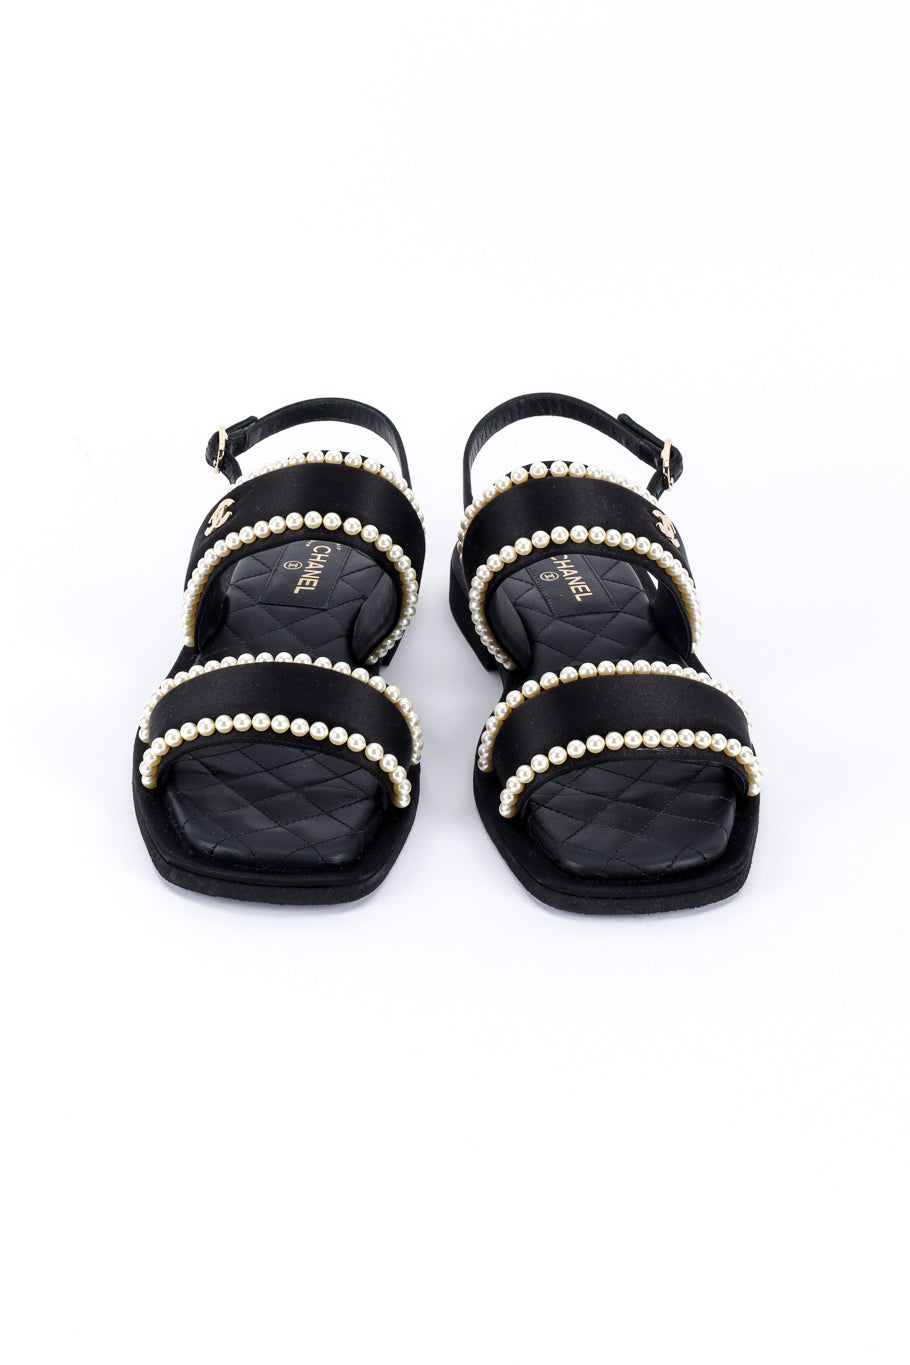 Chanel CC Satin & Pearl Sandals front @recess la